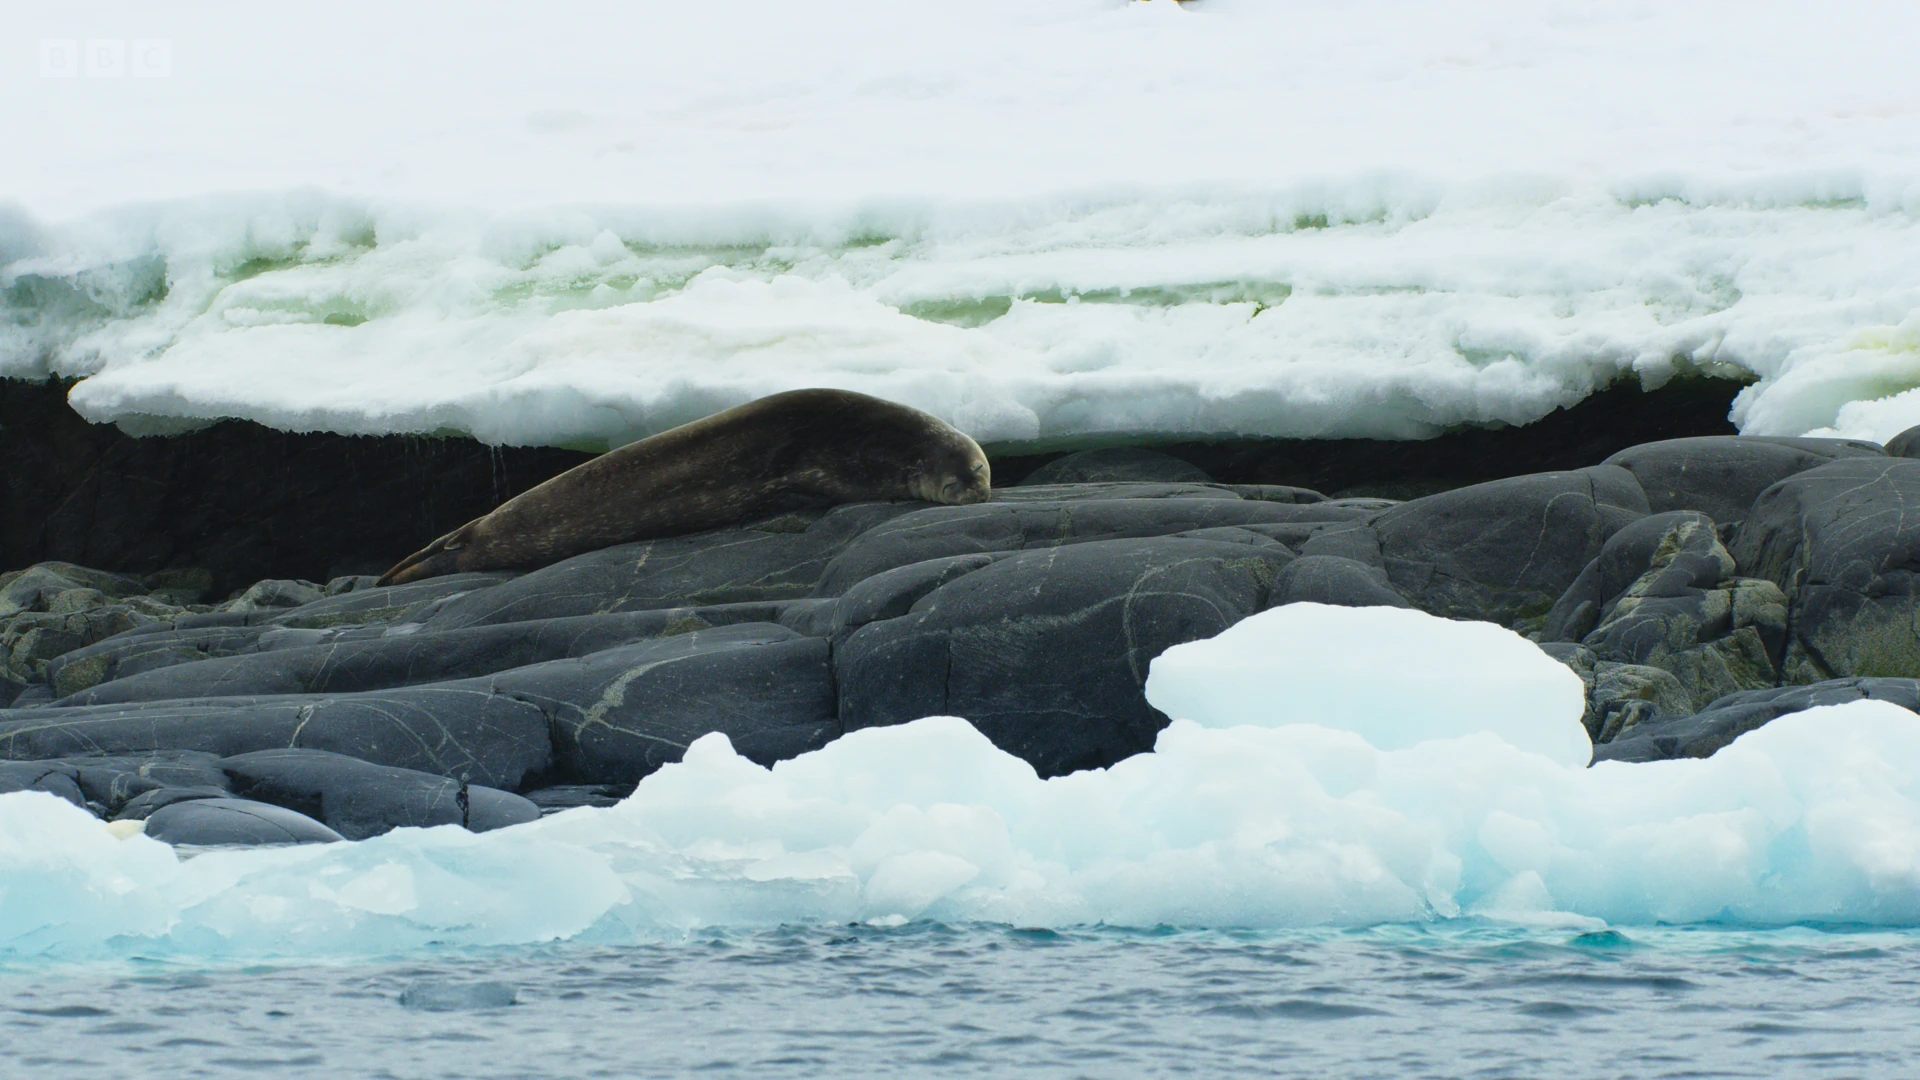 Weddell seal (Leptonychotes weddellii) as shown in Frozen Planet II - Frozen South